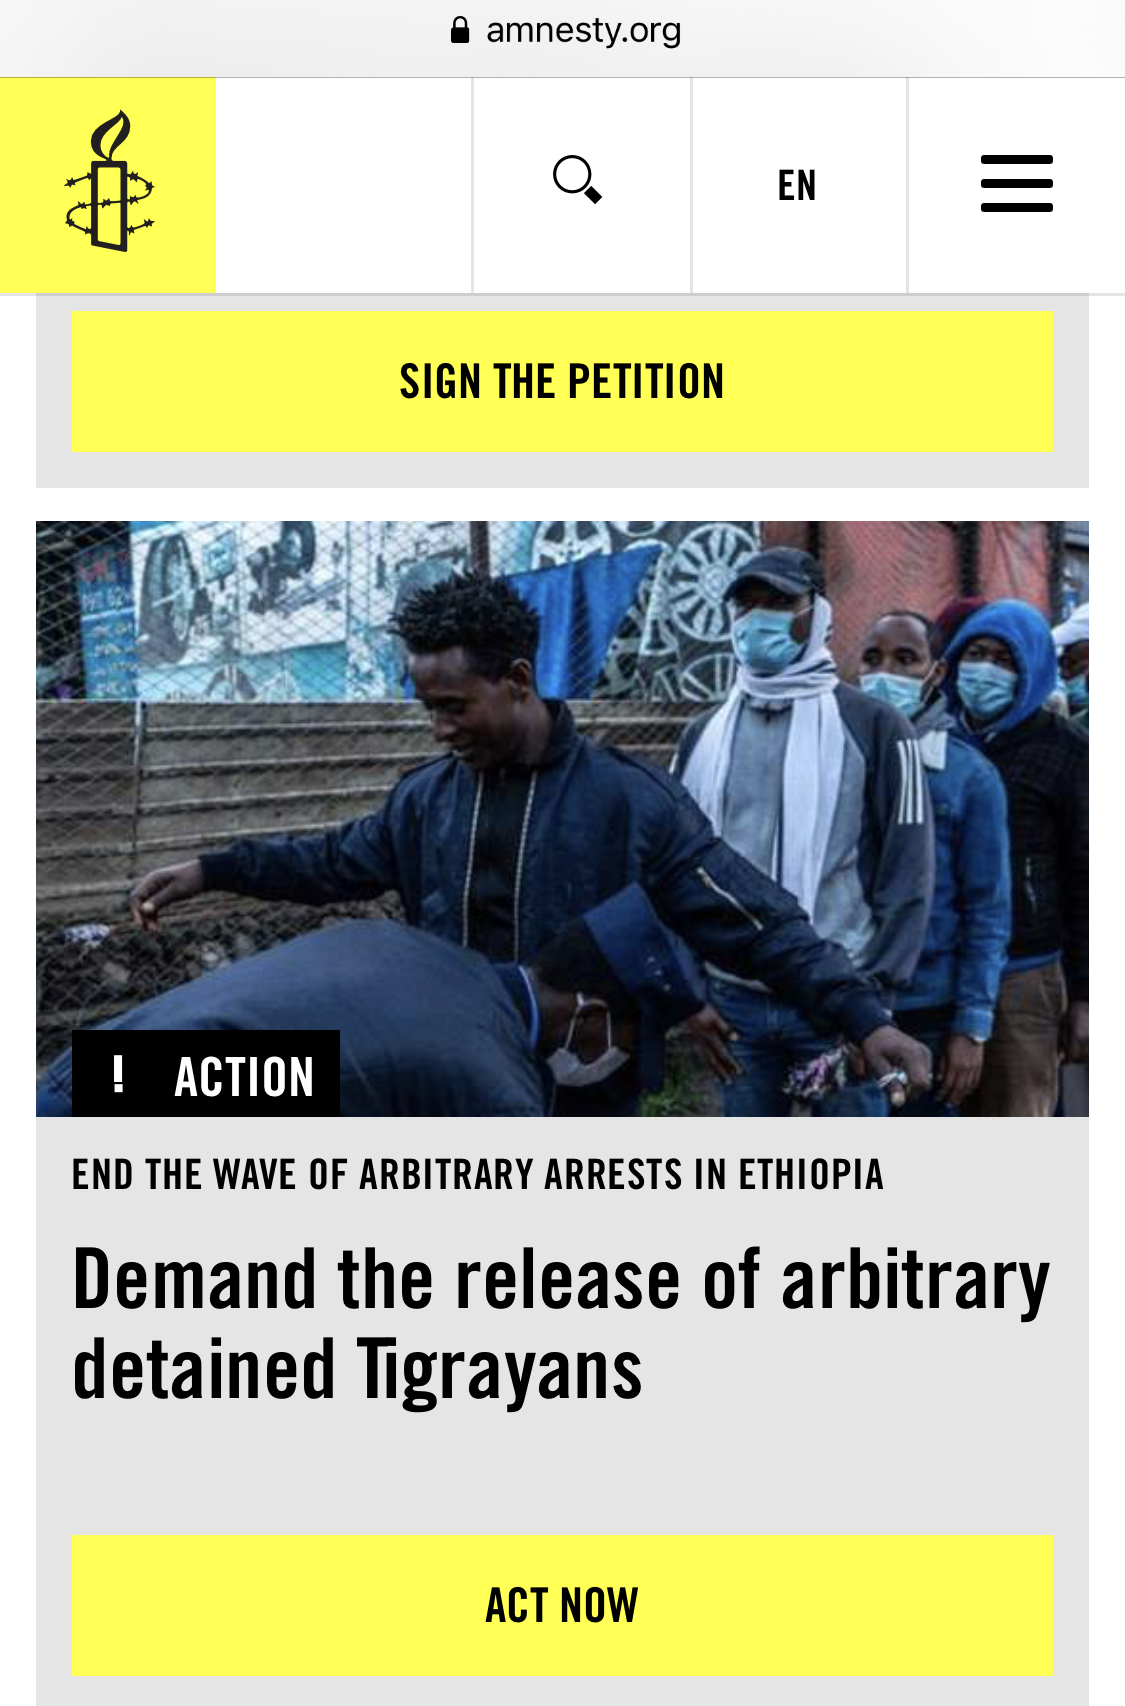 Amnesty accused of misusing photo for false story on Ethiopia